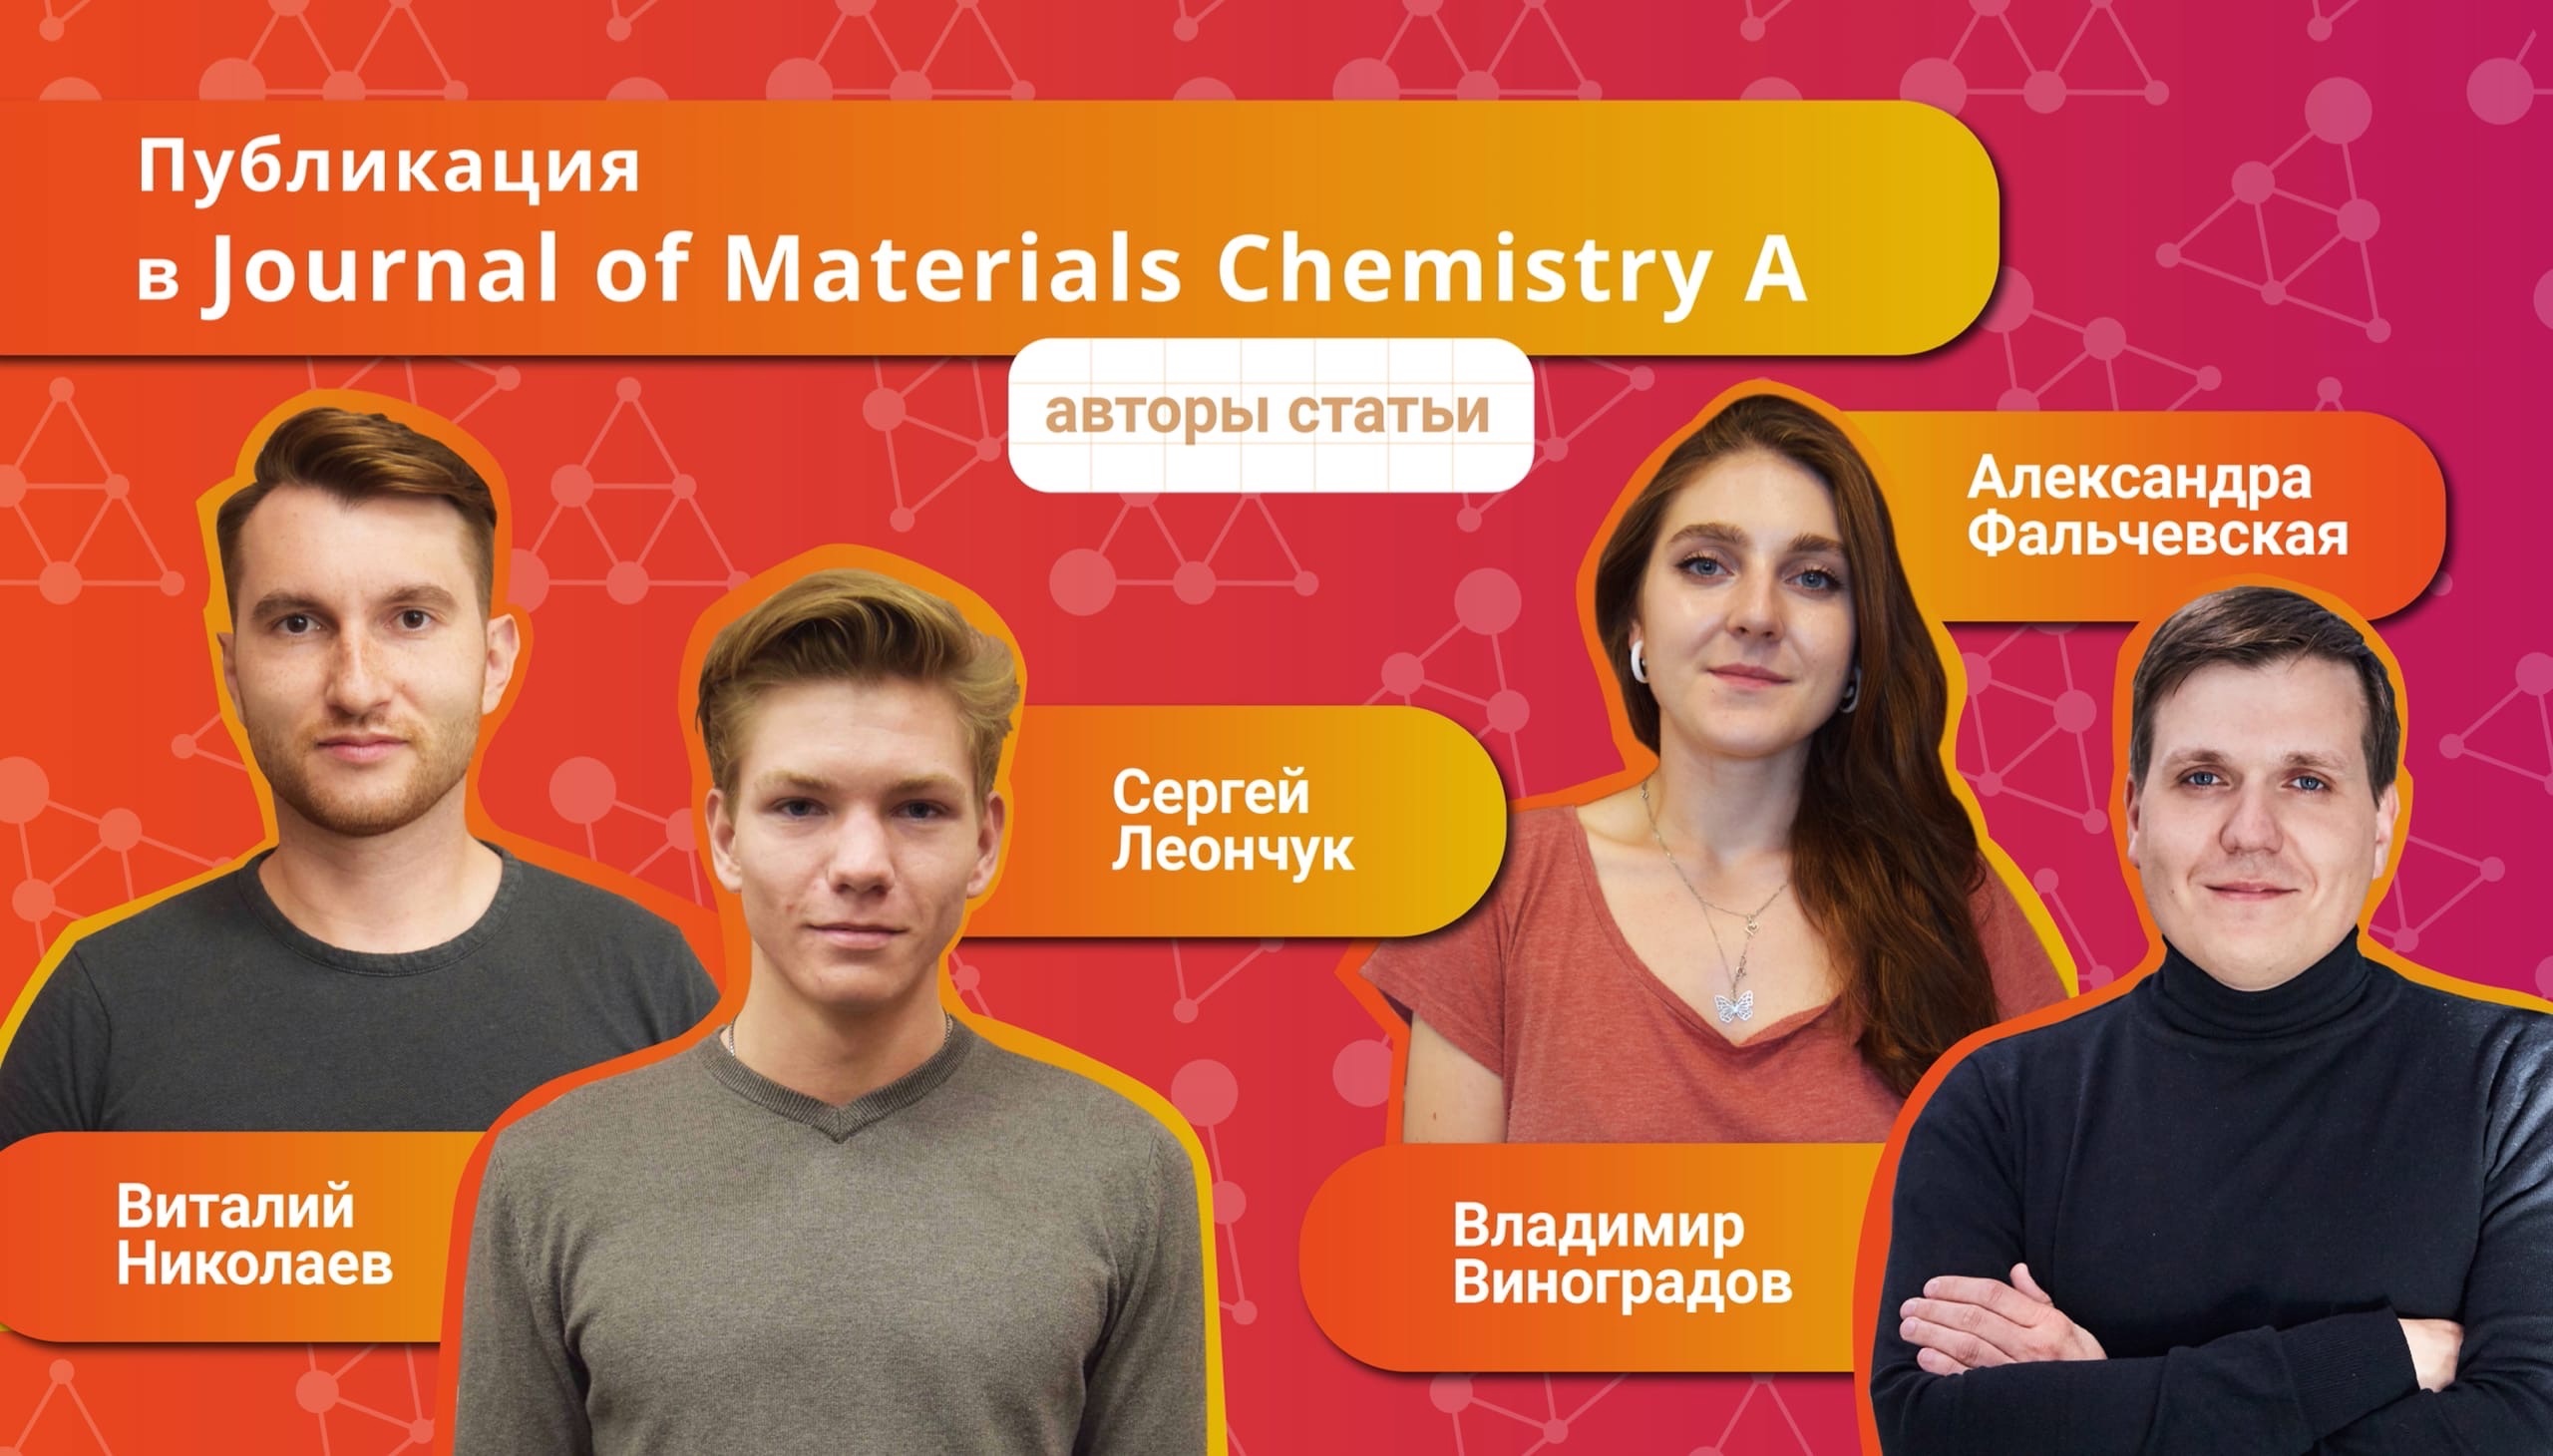 Студенты Центра искусственного интеллекта в химии опубликовали статью в Journal of Materials Chemistry A